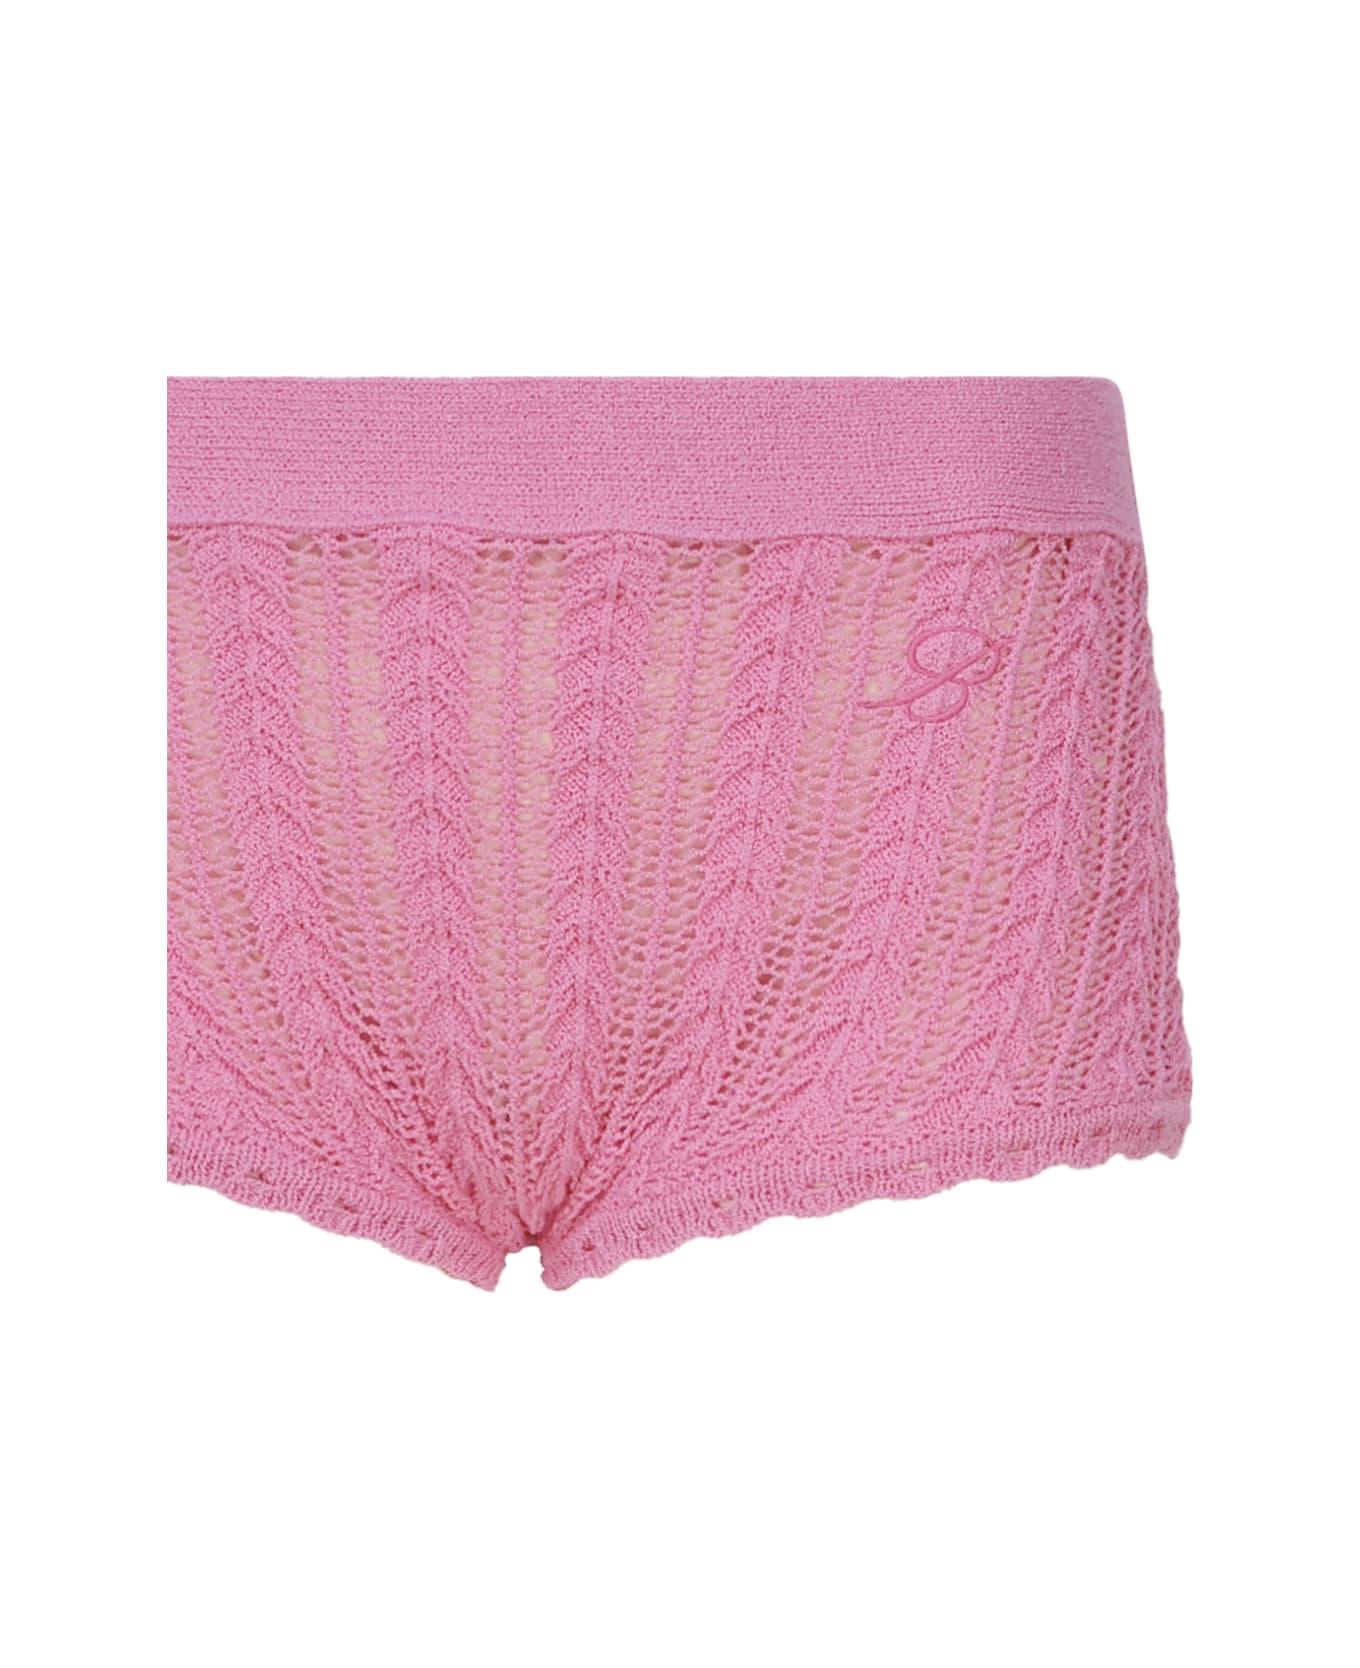 Blumarine Cotton Knit Shorts - Pink geranio